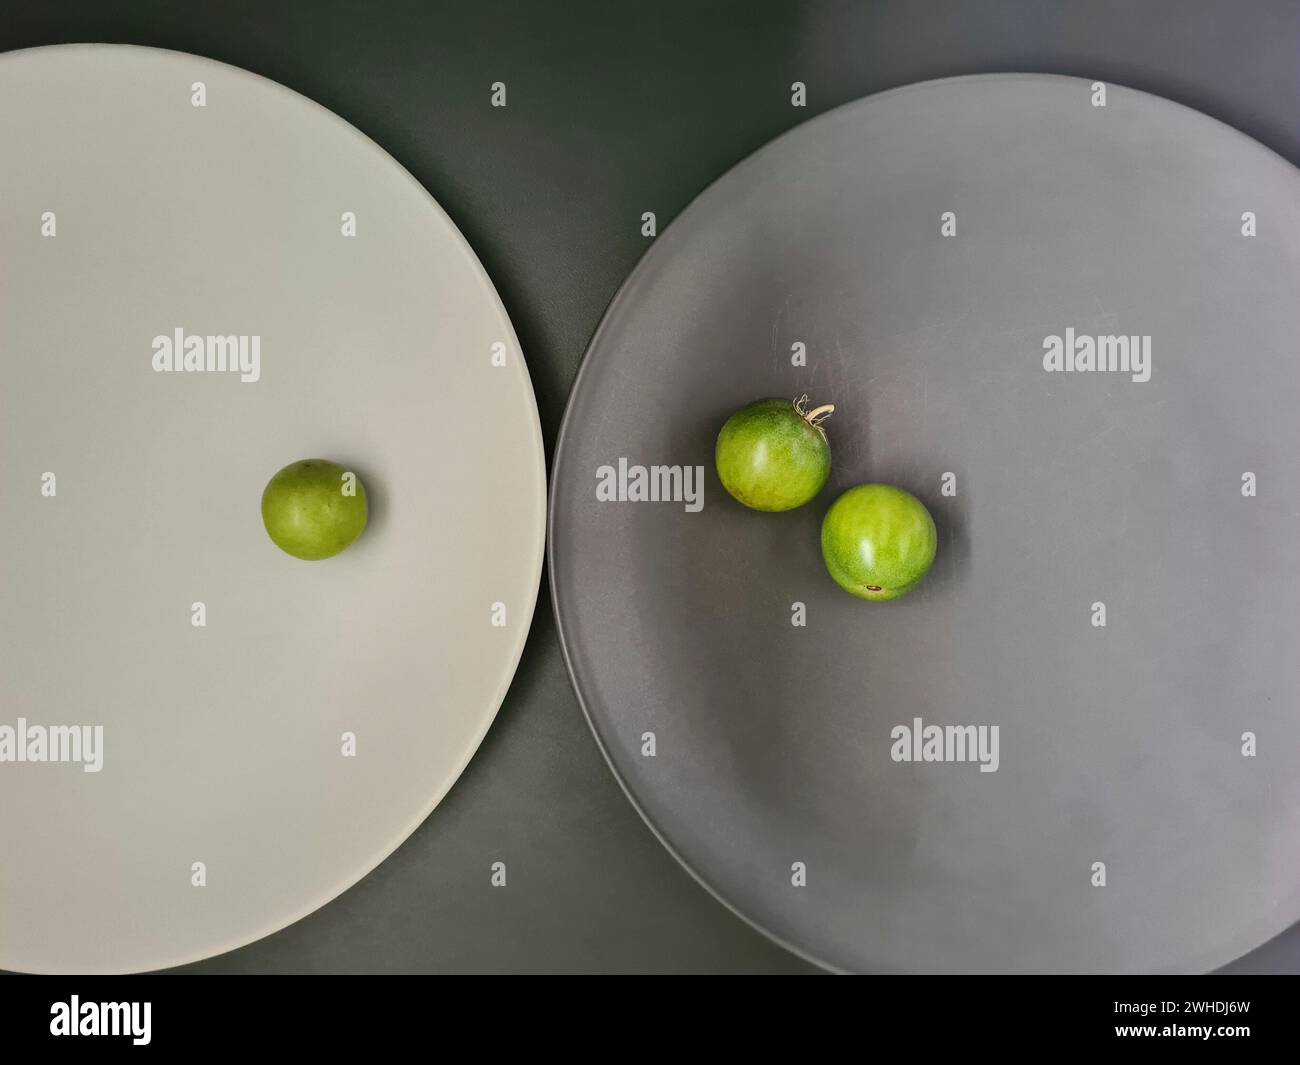 un piatto bianco con 1 pomodoro verde e un piatto grigio con 2 pomodori piccoli su sfondo grigio sul tema dei contrasti e del minimalismo Foto Stock